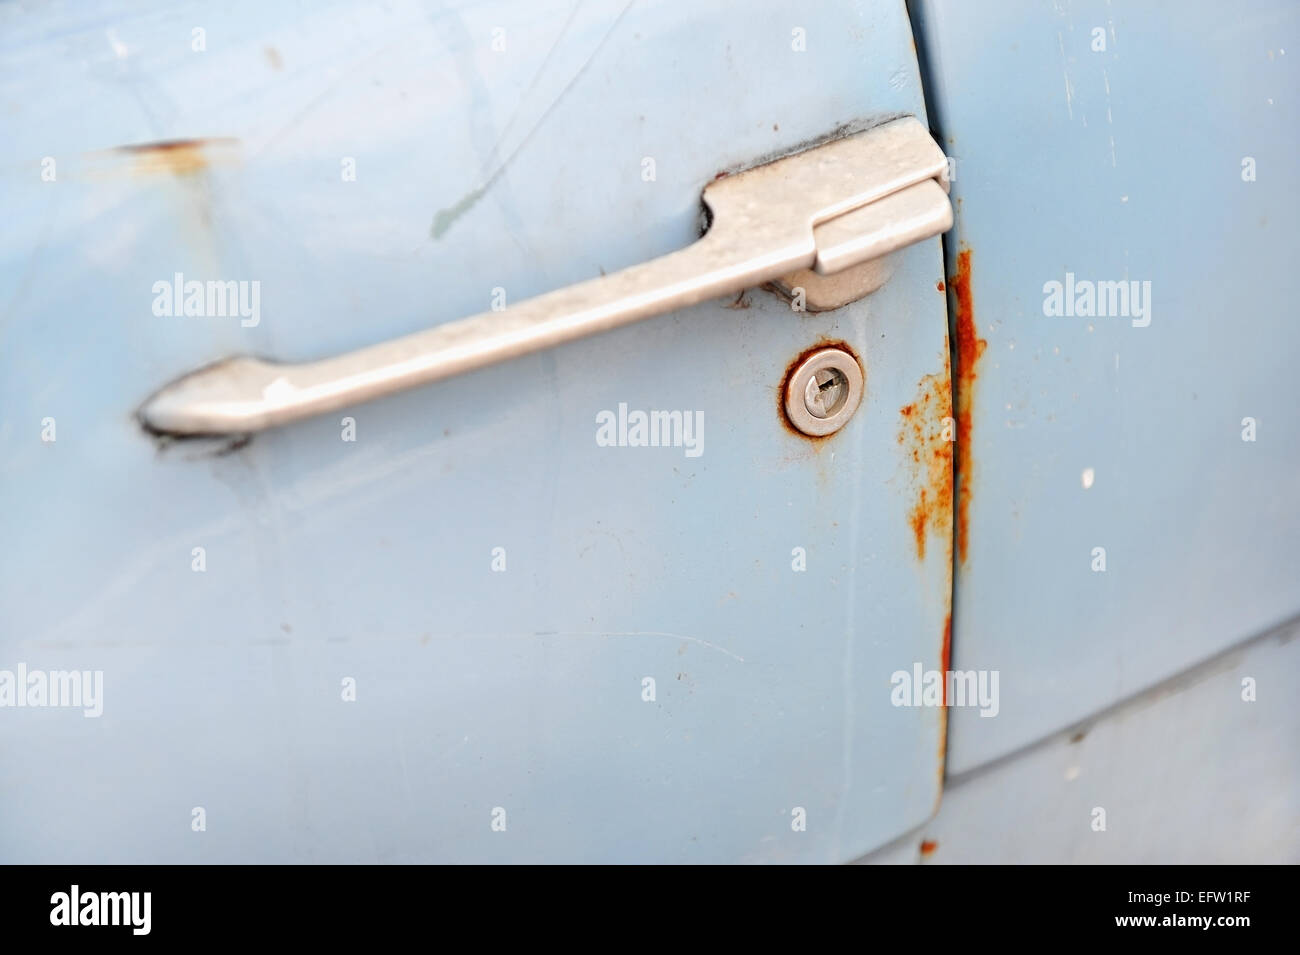 Detalle shot con un oxidado la cerradura de la puerta de un coche viejo Foto de stock